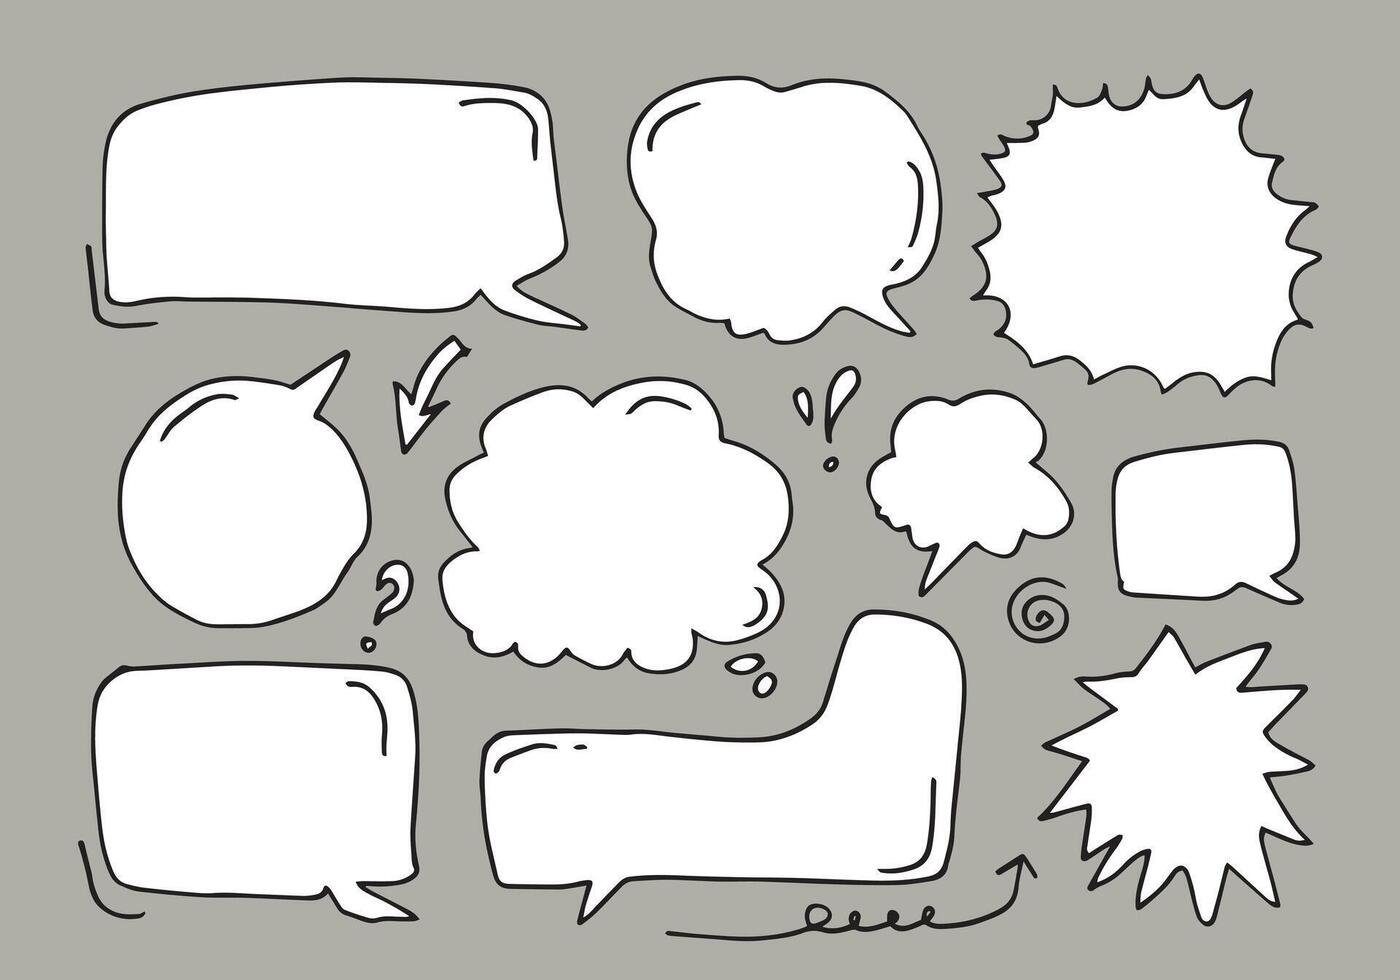 conjunto de bolhas de discurso de esboço mão desenhada. ilustração vetorial vetor